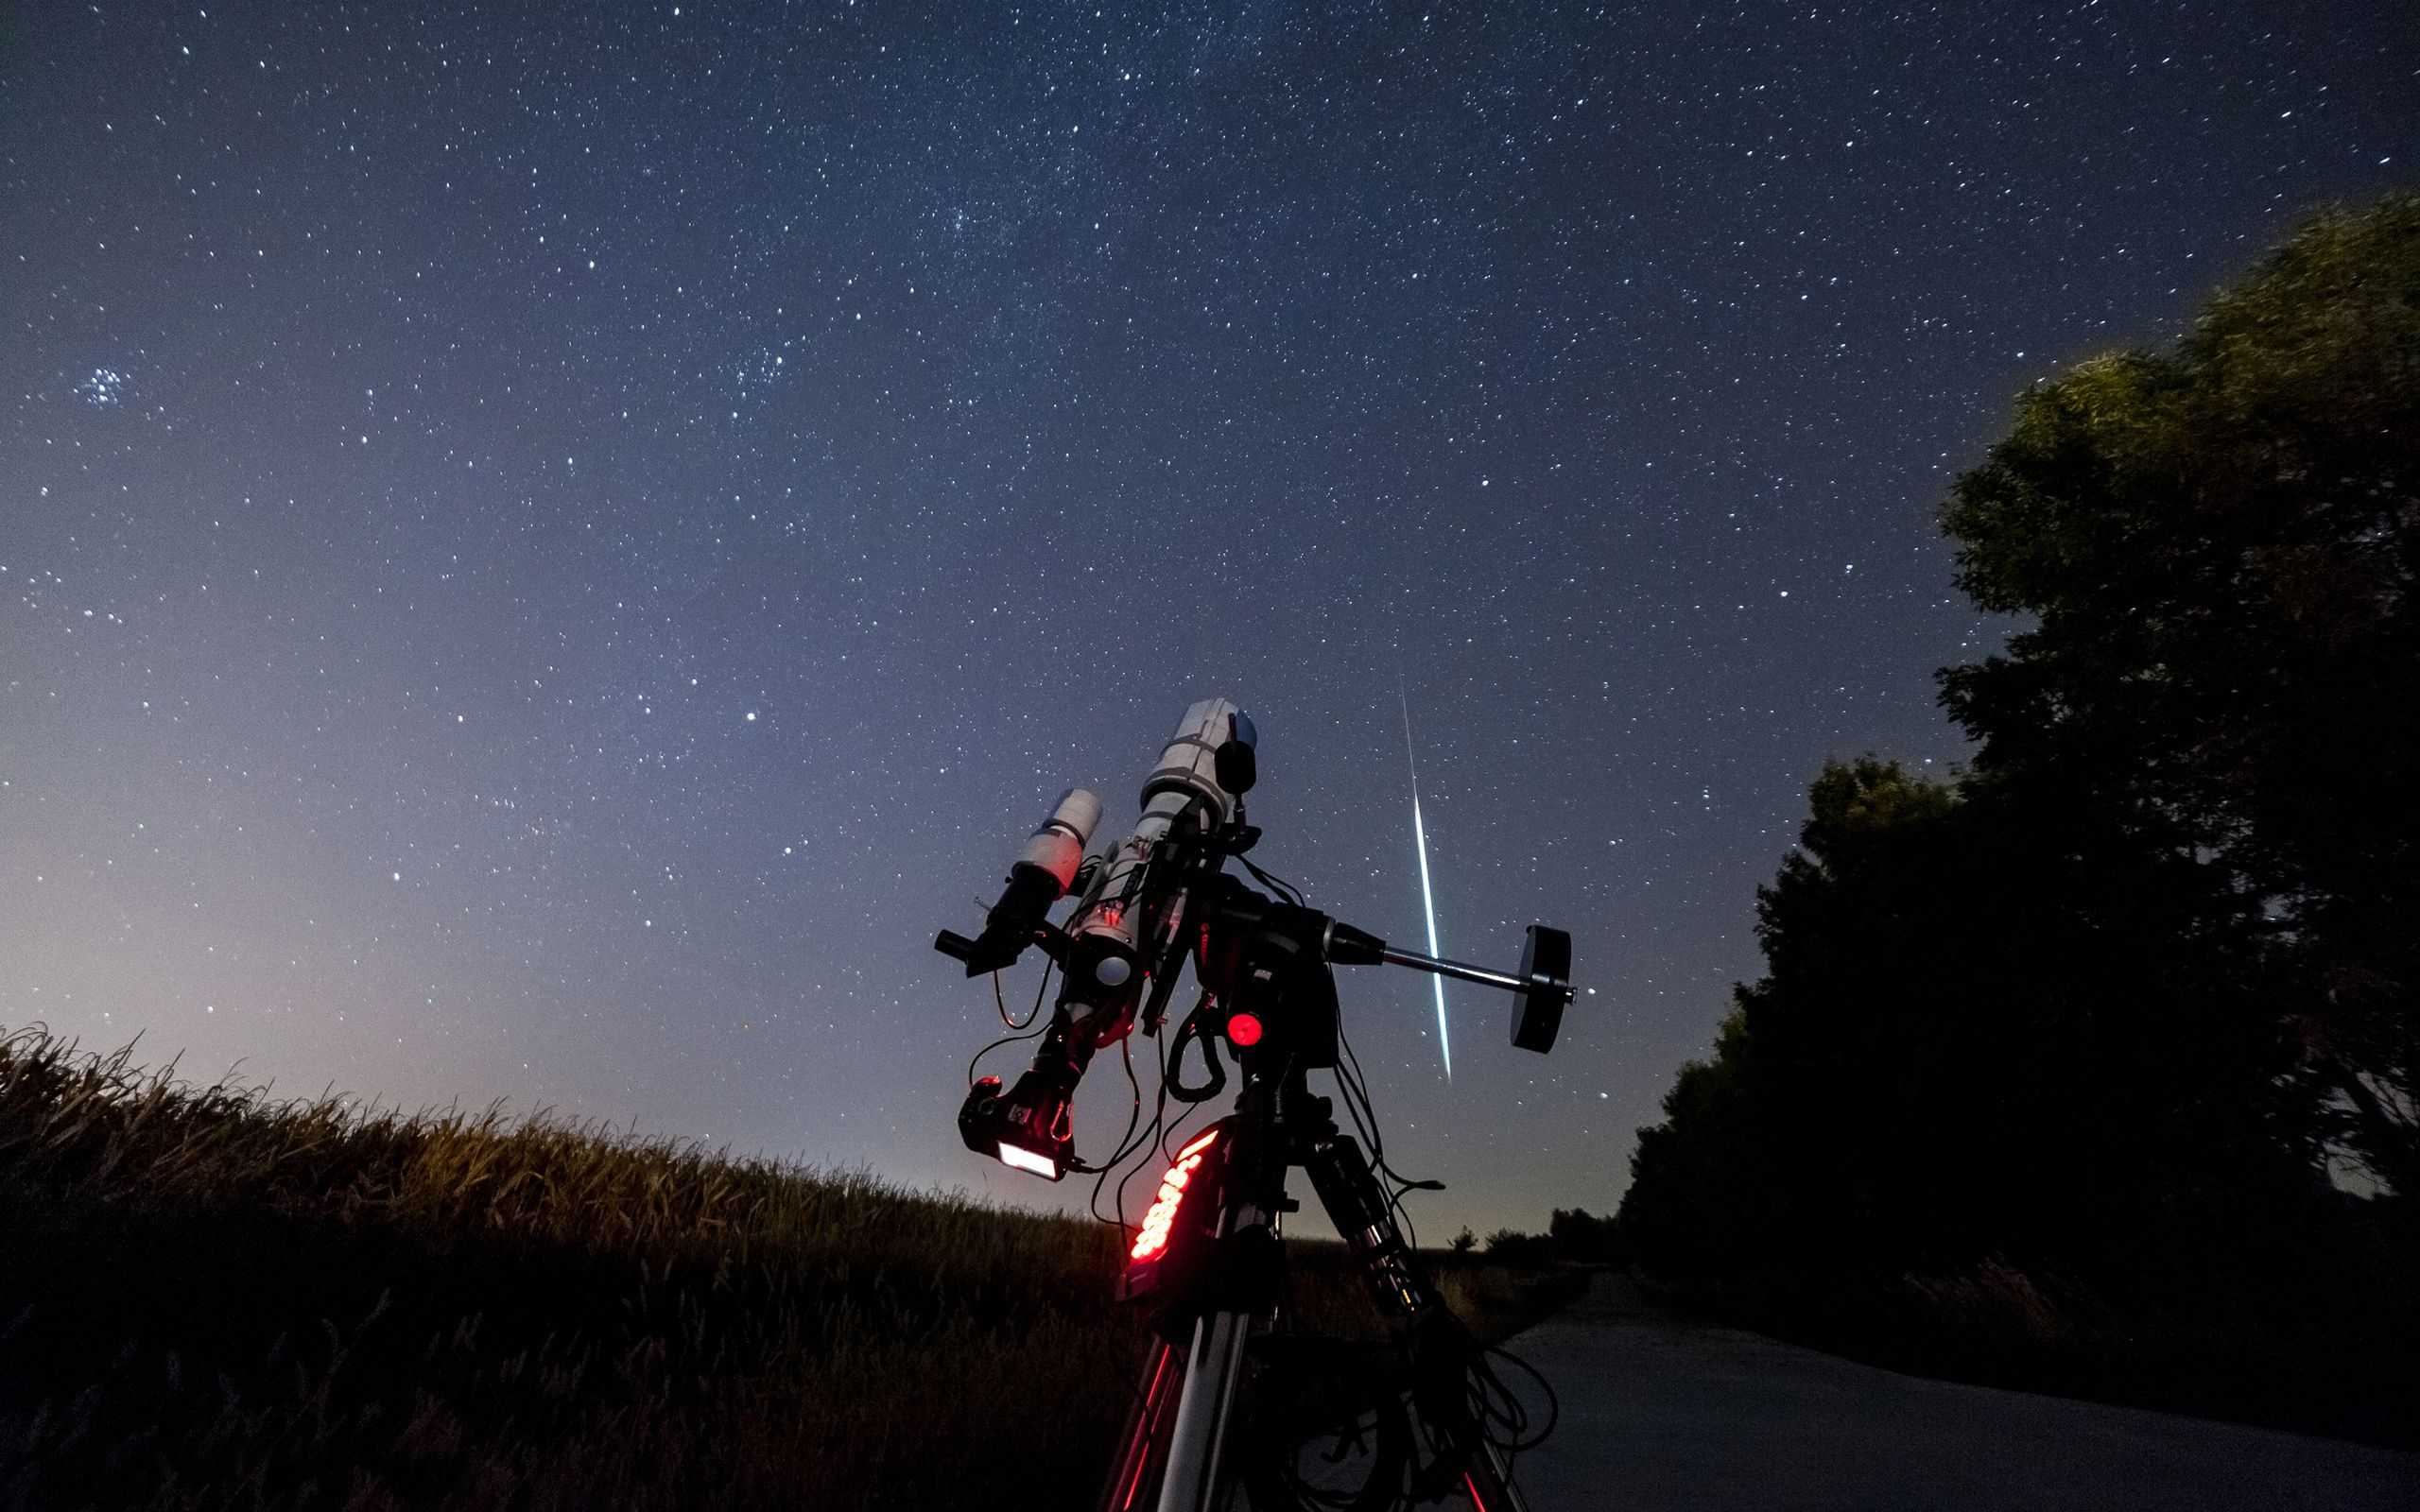 Как настроить фотоаппарат для съемки звездного неба